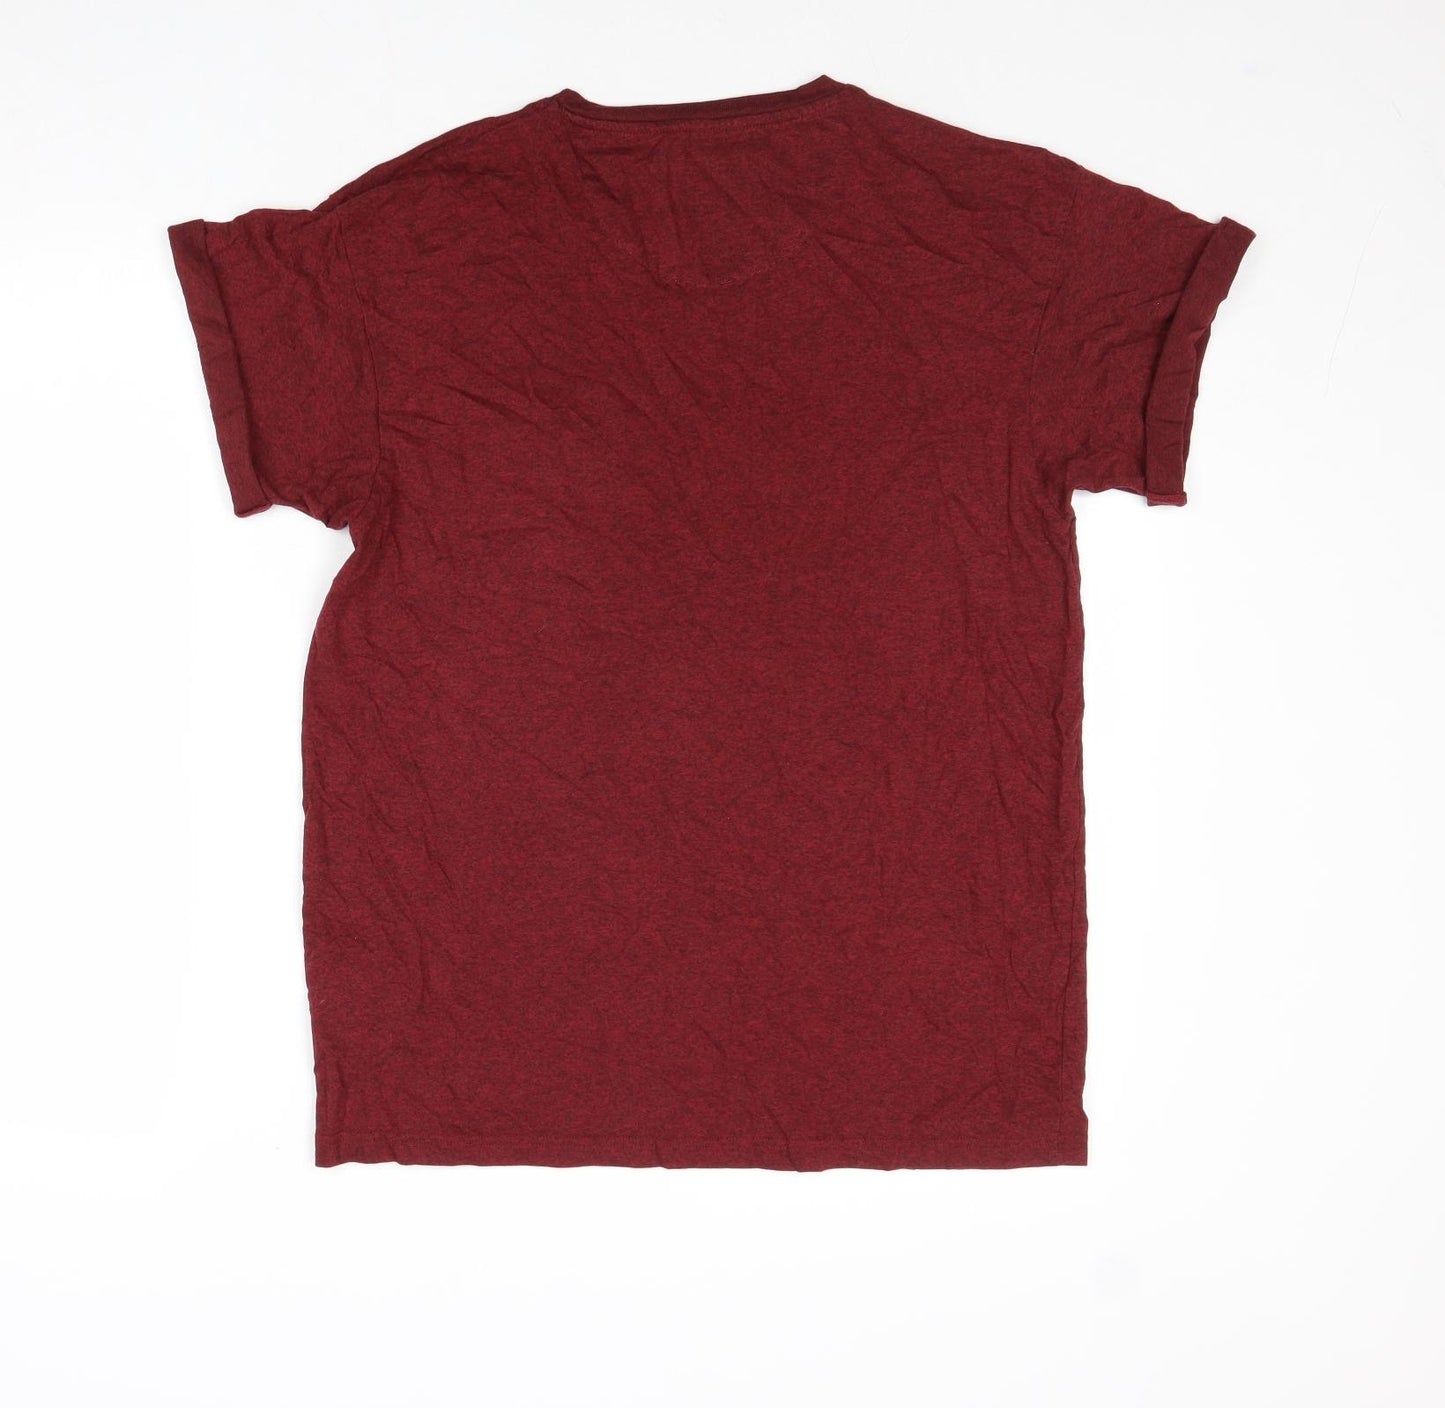 Burton Mens Red Cotton T-Shirt Size M Round Neck